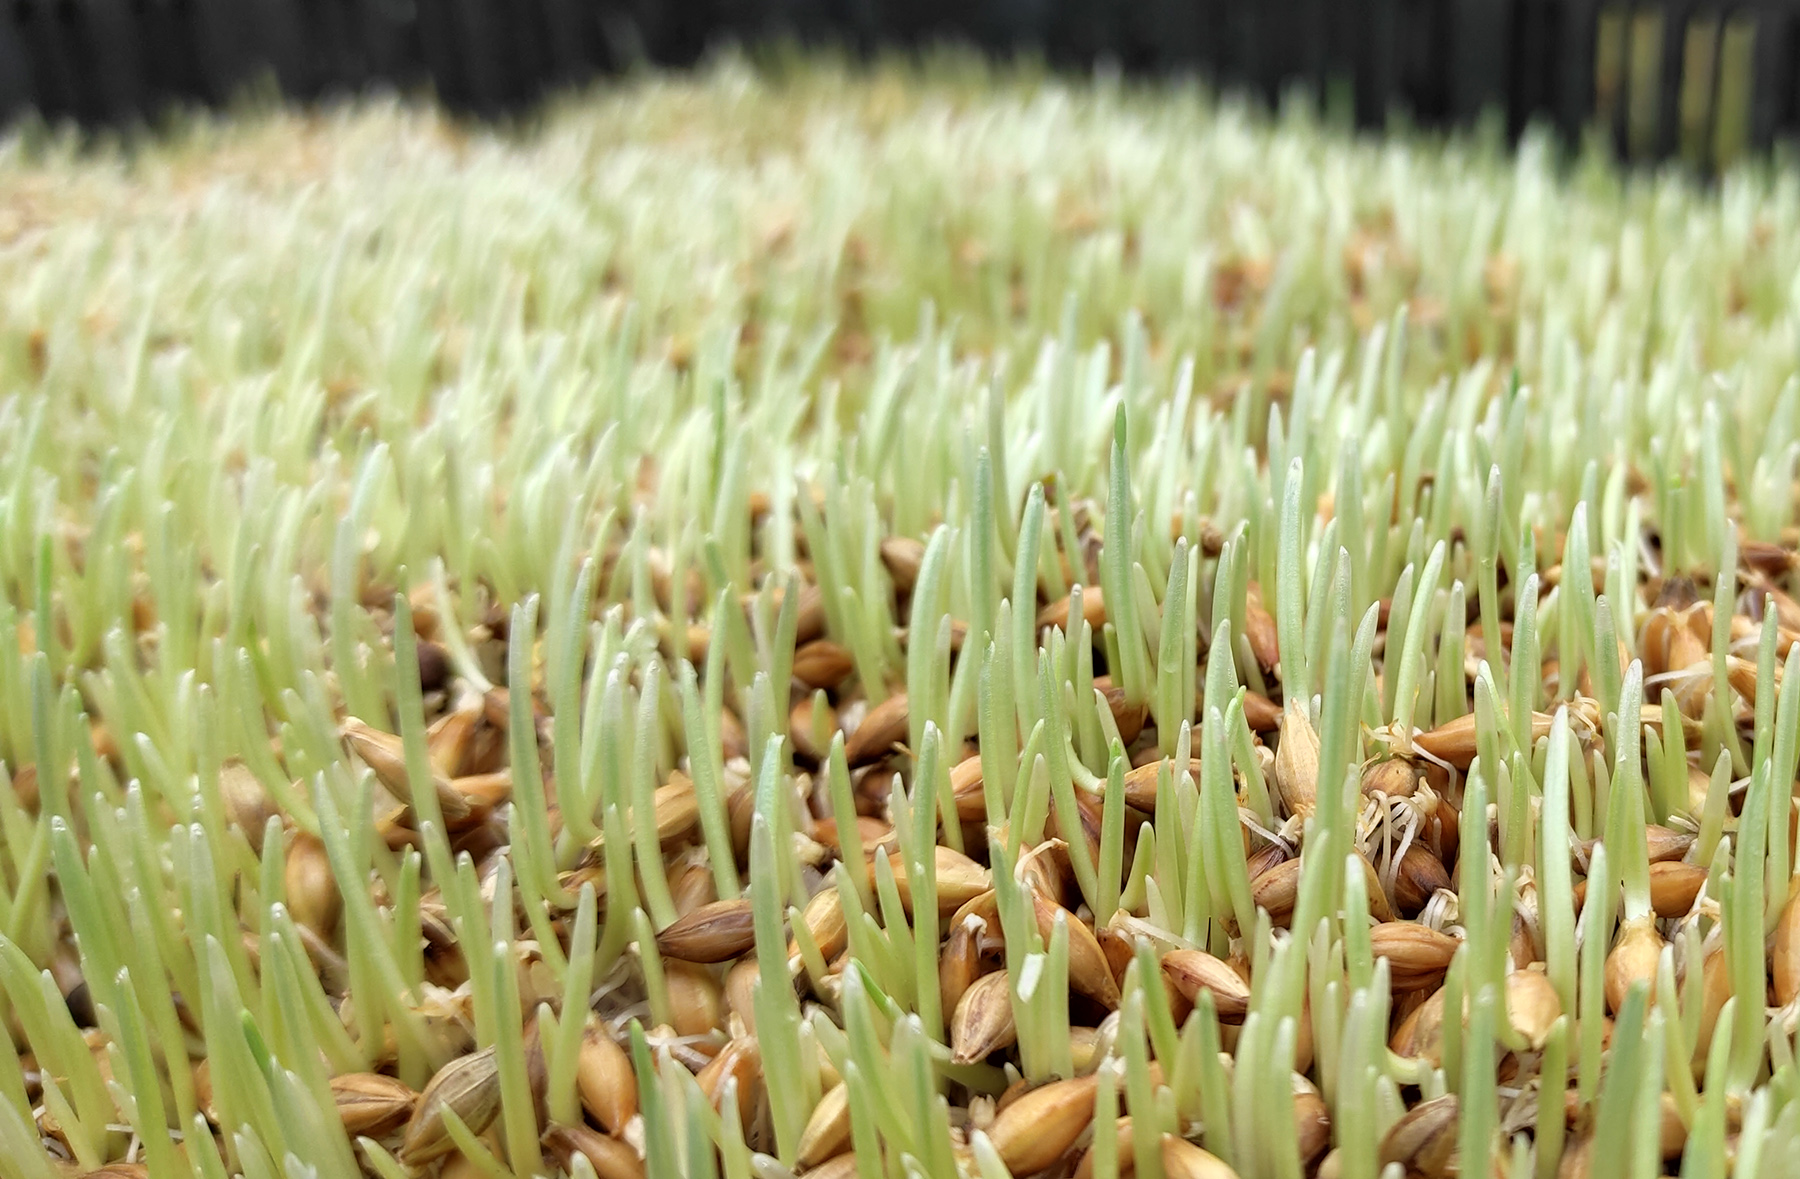 Hydroponic Barley Fodder Grown